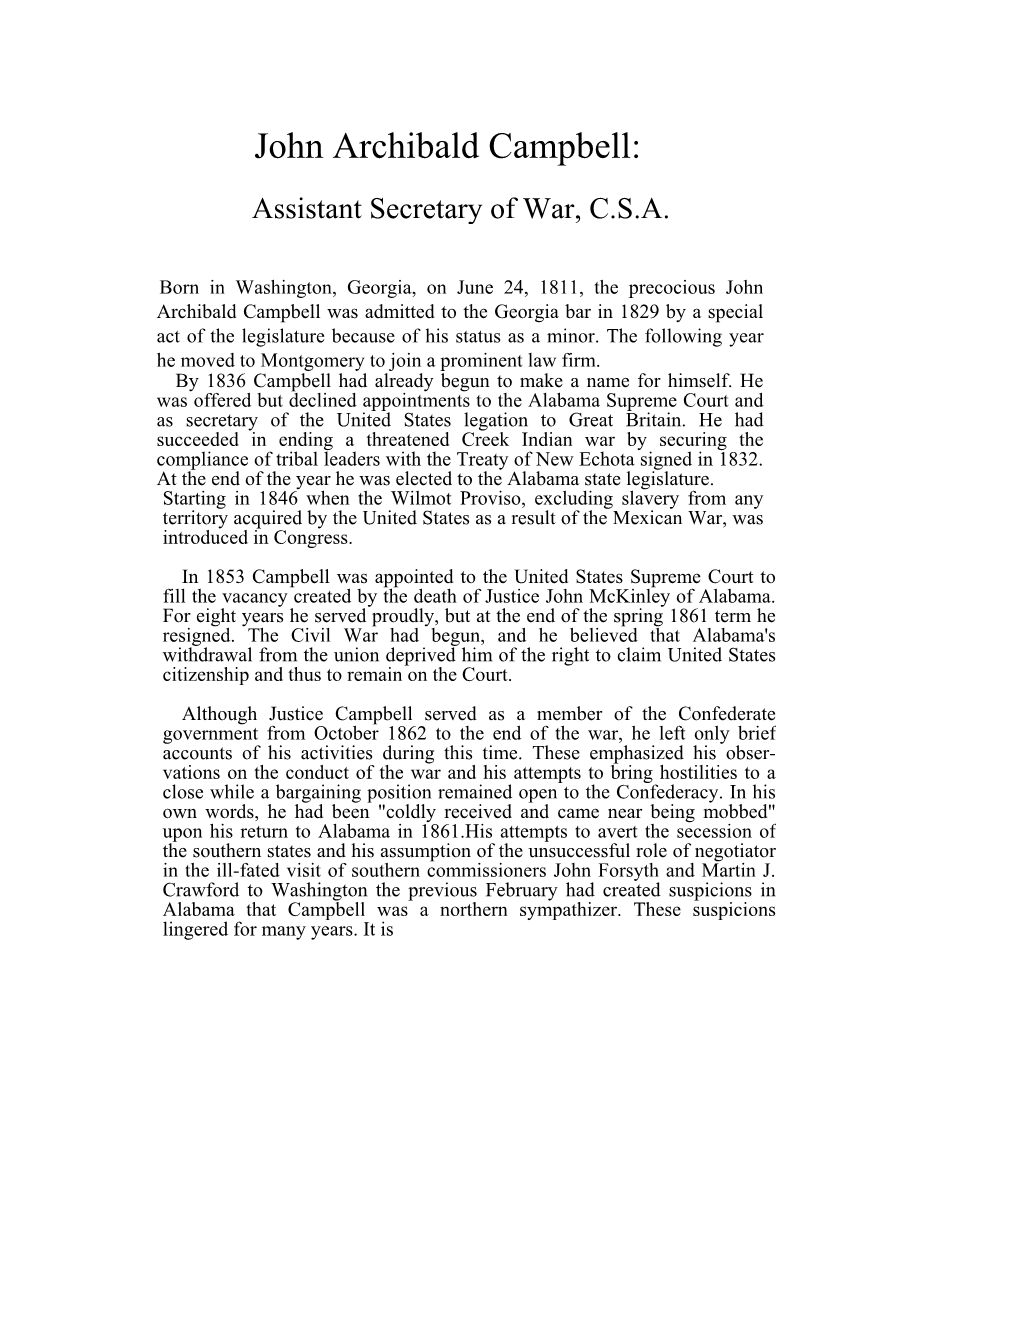 John Archibald Campbell: Assistant Secretary of War, C.S.A